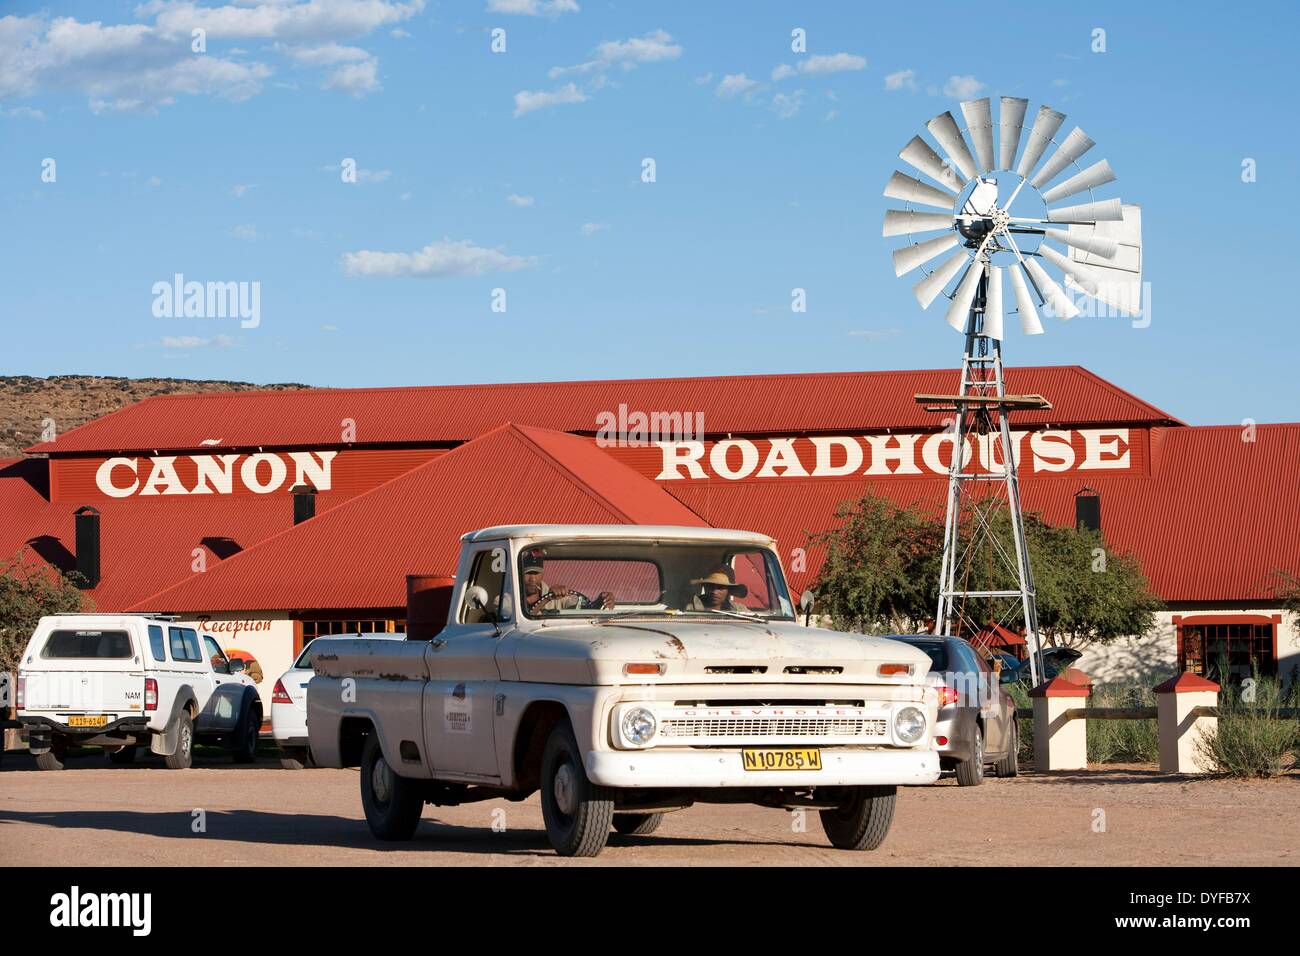 Il Canon Roadhouse è un ristorante, hotel e stazione autostradale sulla strada per il Fish River Canyon nel sud della Namibia, 07 gennaio 2011. Foto: Tom Schulze - nessun filo SERVICE - Foto Stock